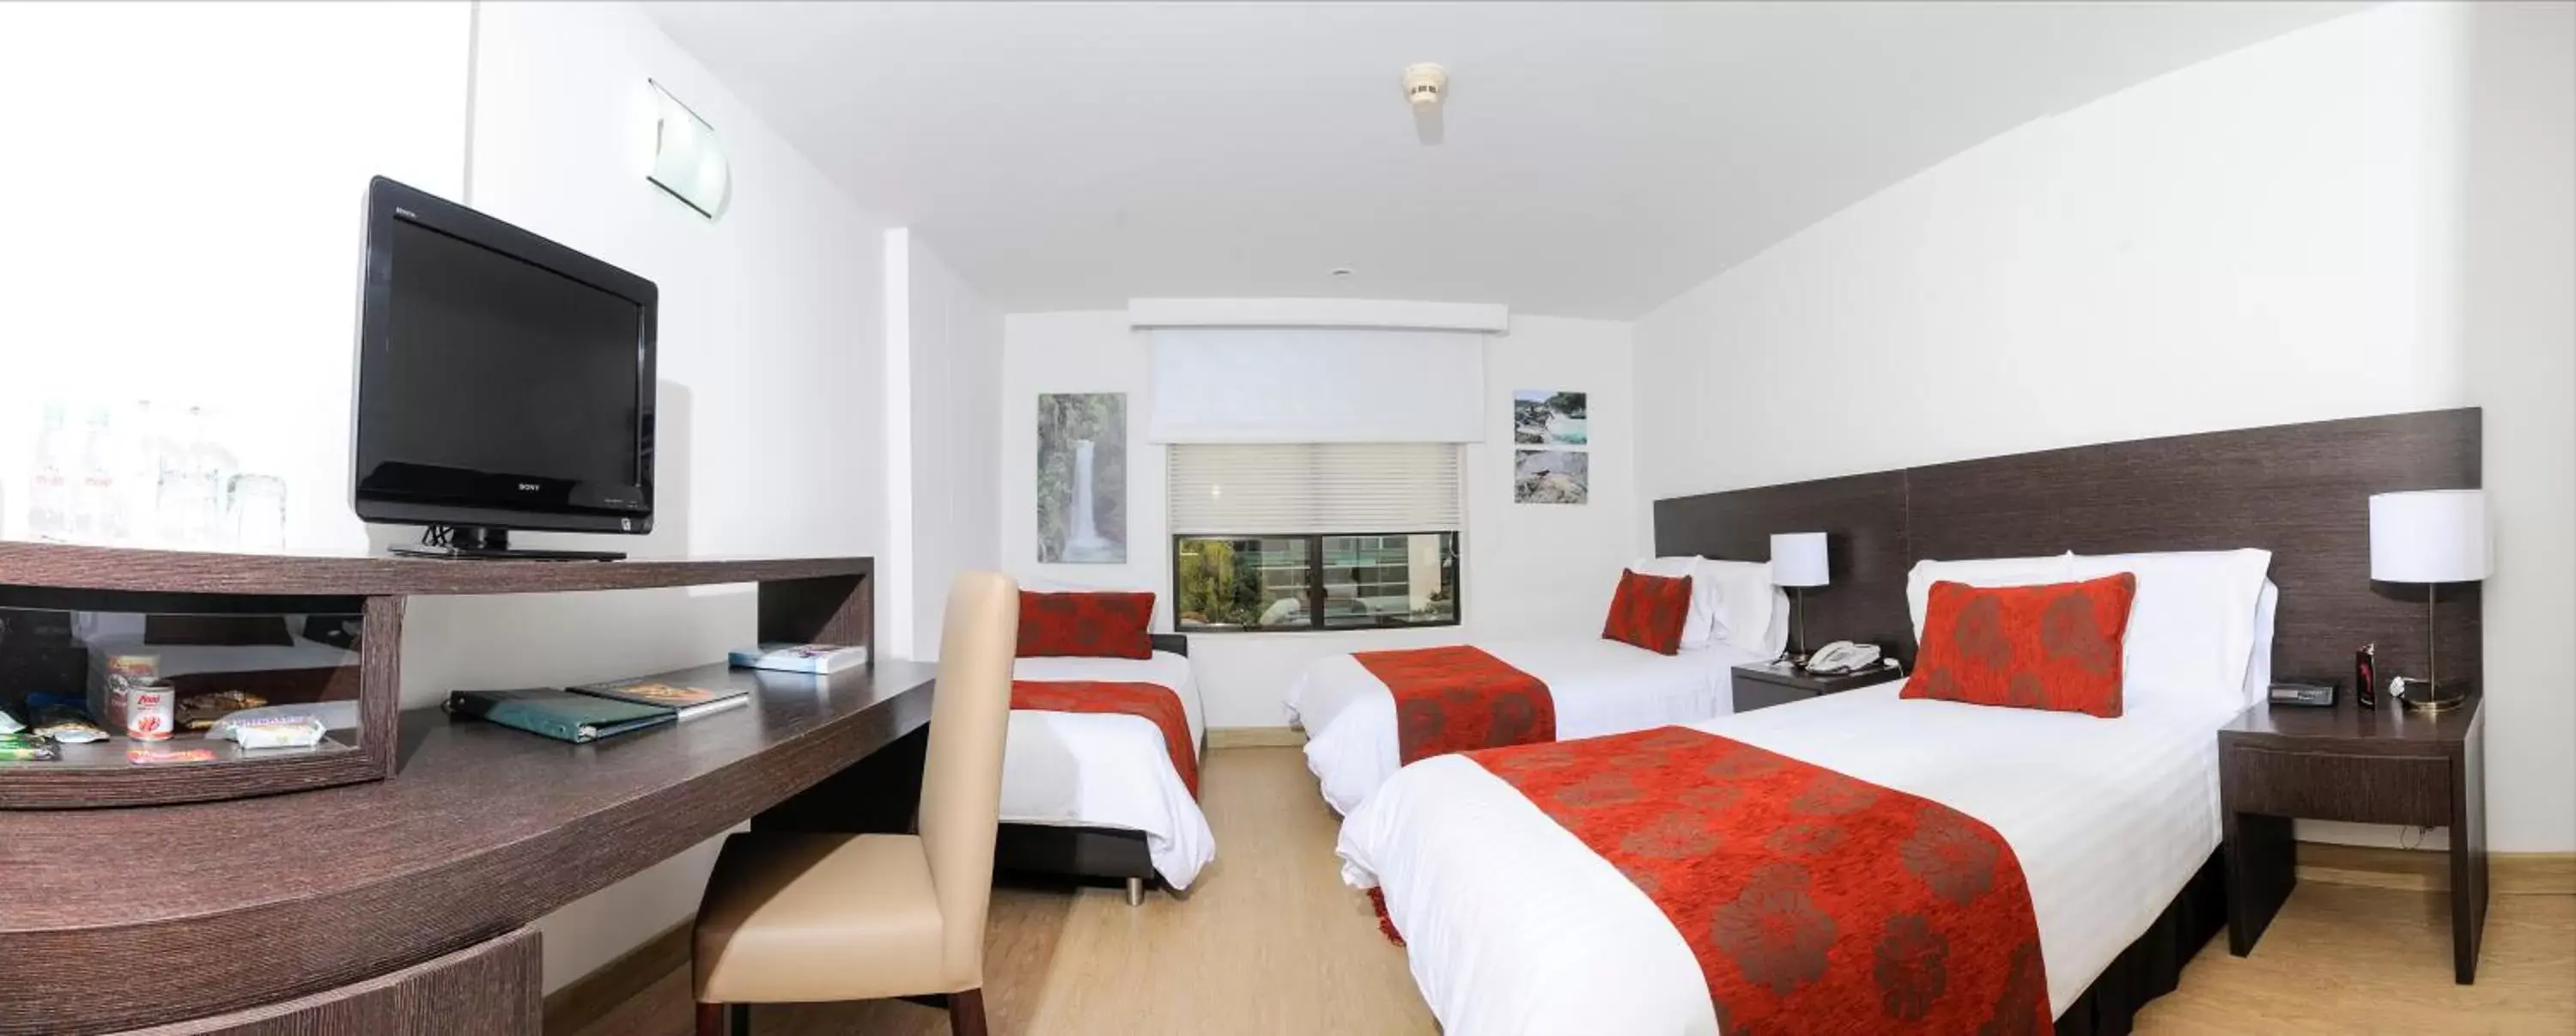 Bedroom, TV/Entertainment Center in Hotel Parque 97 Suites